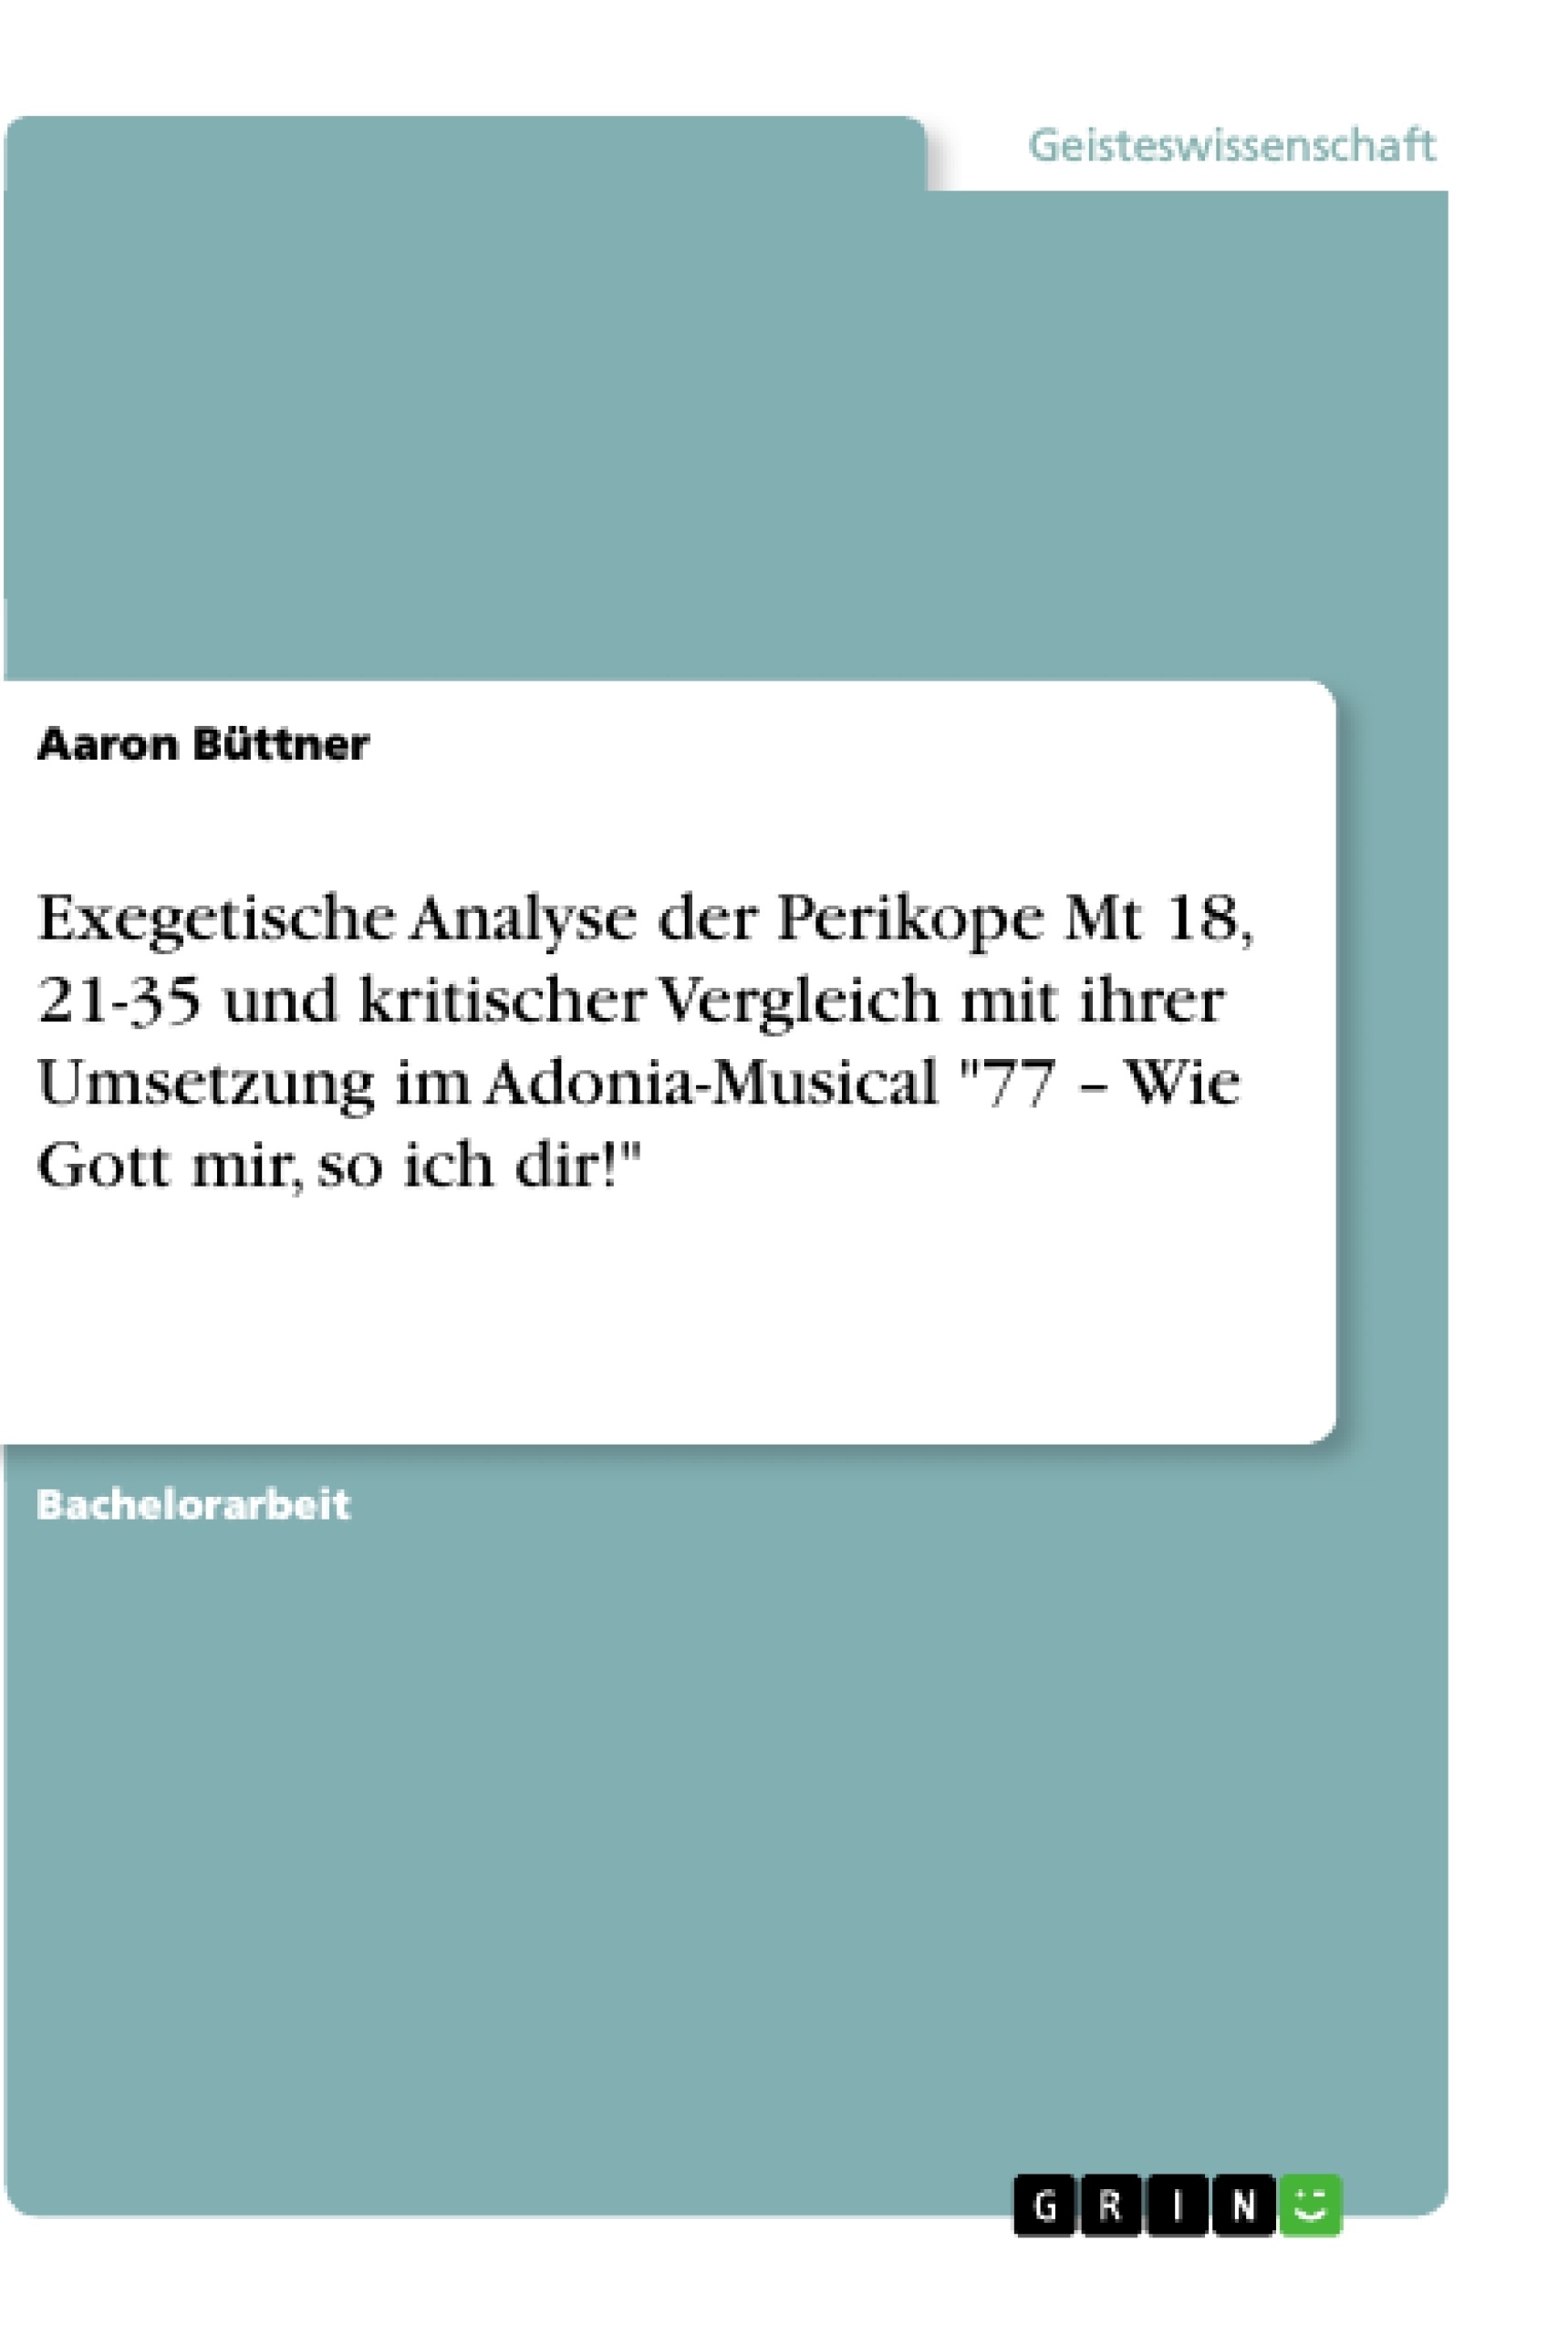 Titel: Exegetische Analyse der Perikope Mt 18, 21-35 und kritischer Vergleich mit ihrer Umsetzung im Adonia-Musical "77 – Wie Gott mir, so ich dir!"